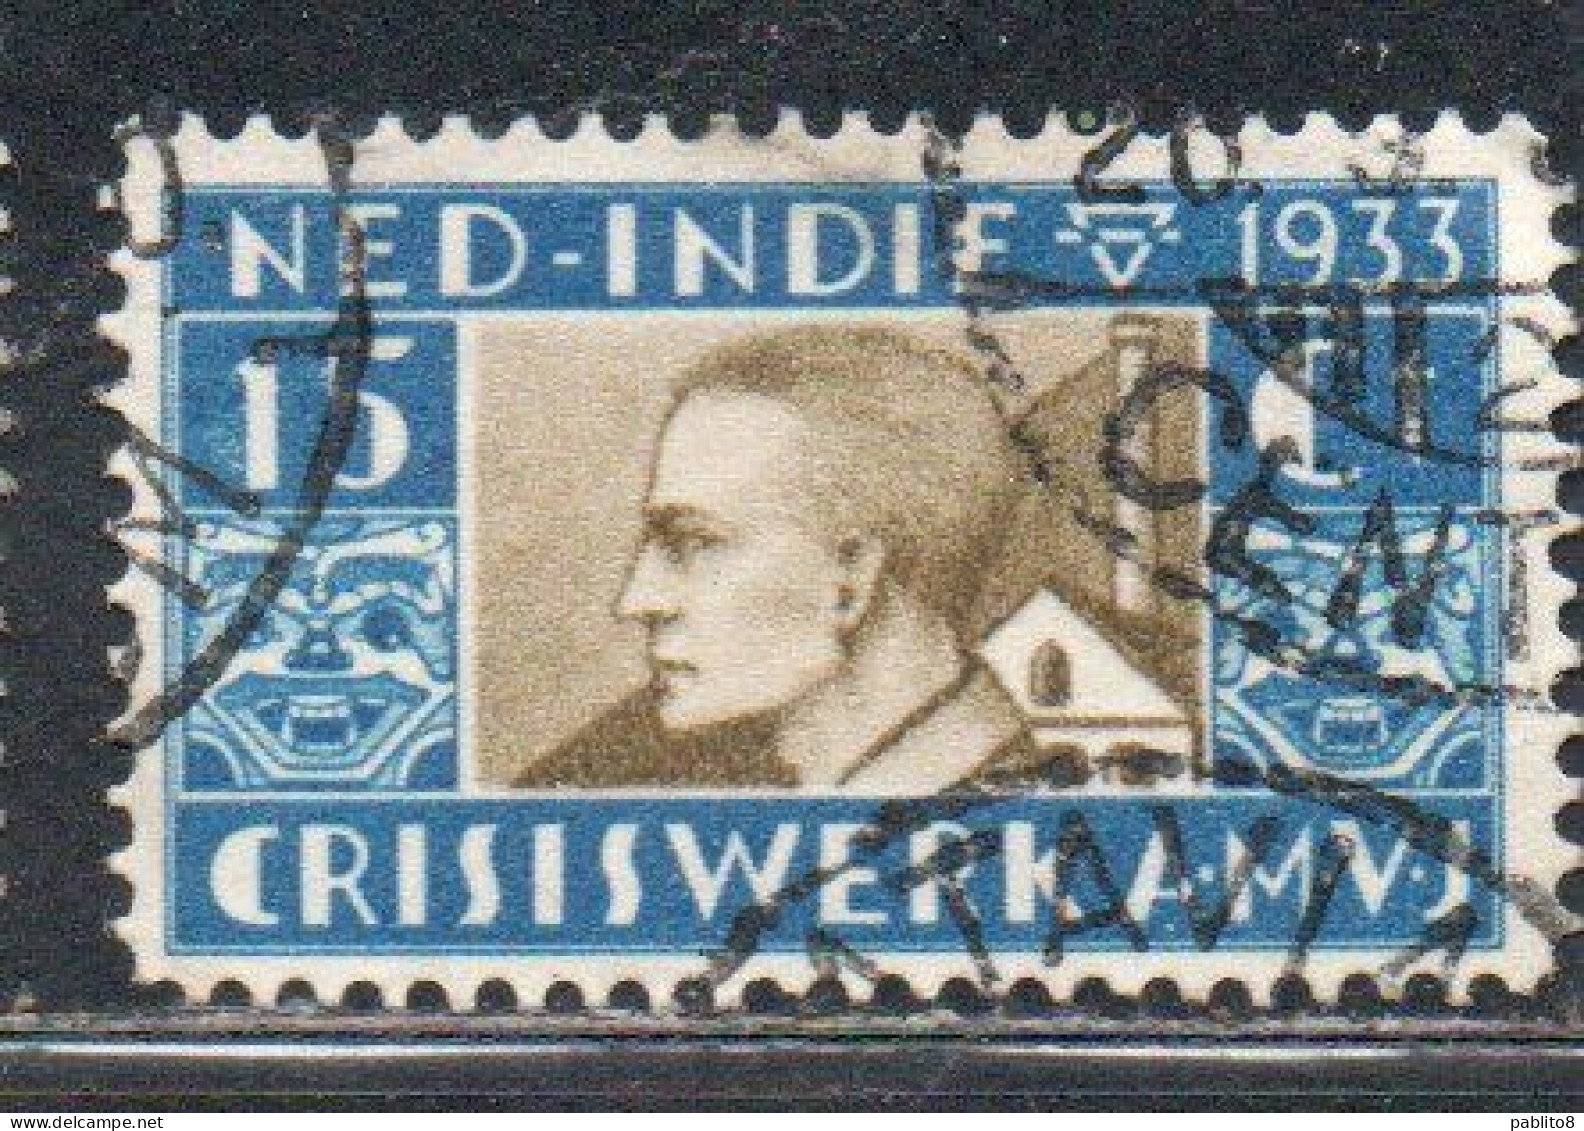 DUTCH INDIA INDIE INDE NEDERLANDS HOLLAND OLANDESE NETHERLANDS INDIES 1933 JOBLESS MAN 15c + 5 USED USATO - Nederlands-Indië